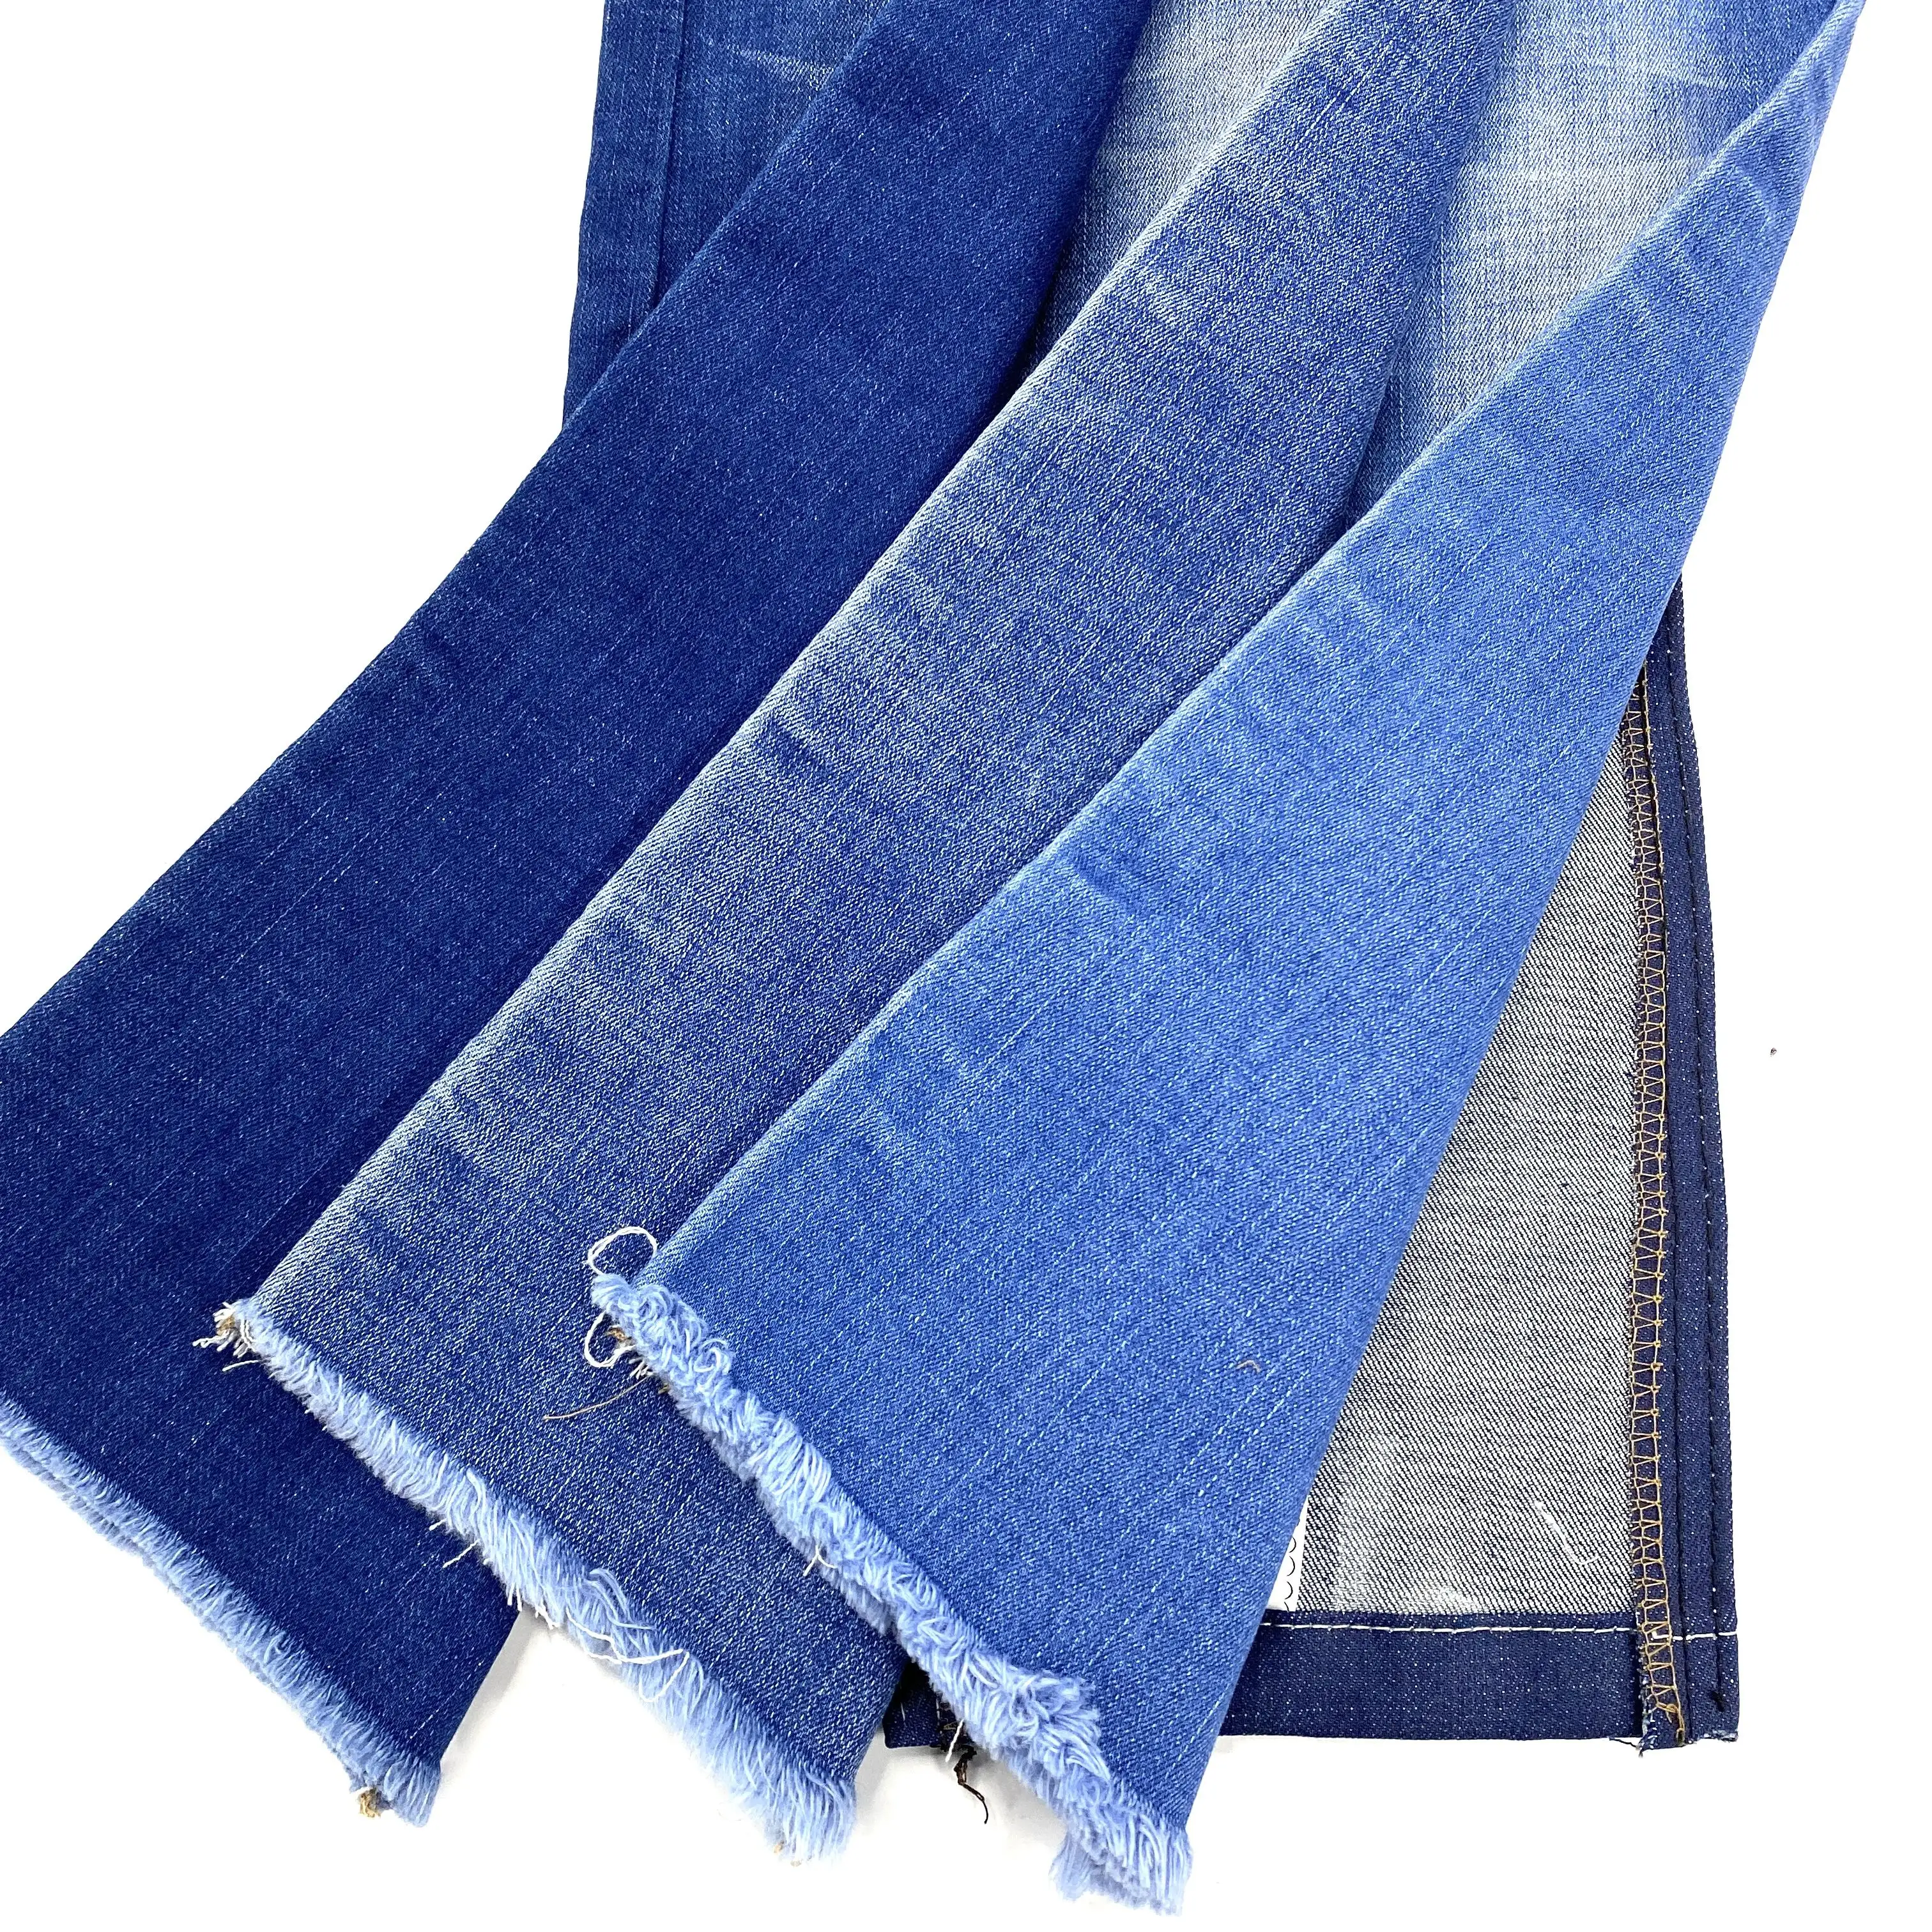 Il tessuto Denim produttore Strength factory 70D Cross weave il tessuto denim è comodo e adatto per realizzare jeans da uomo